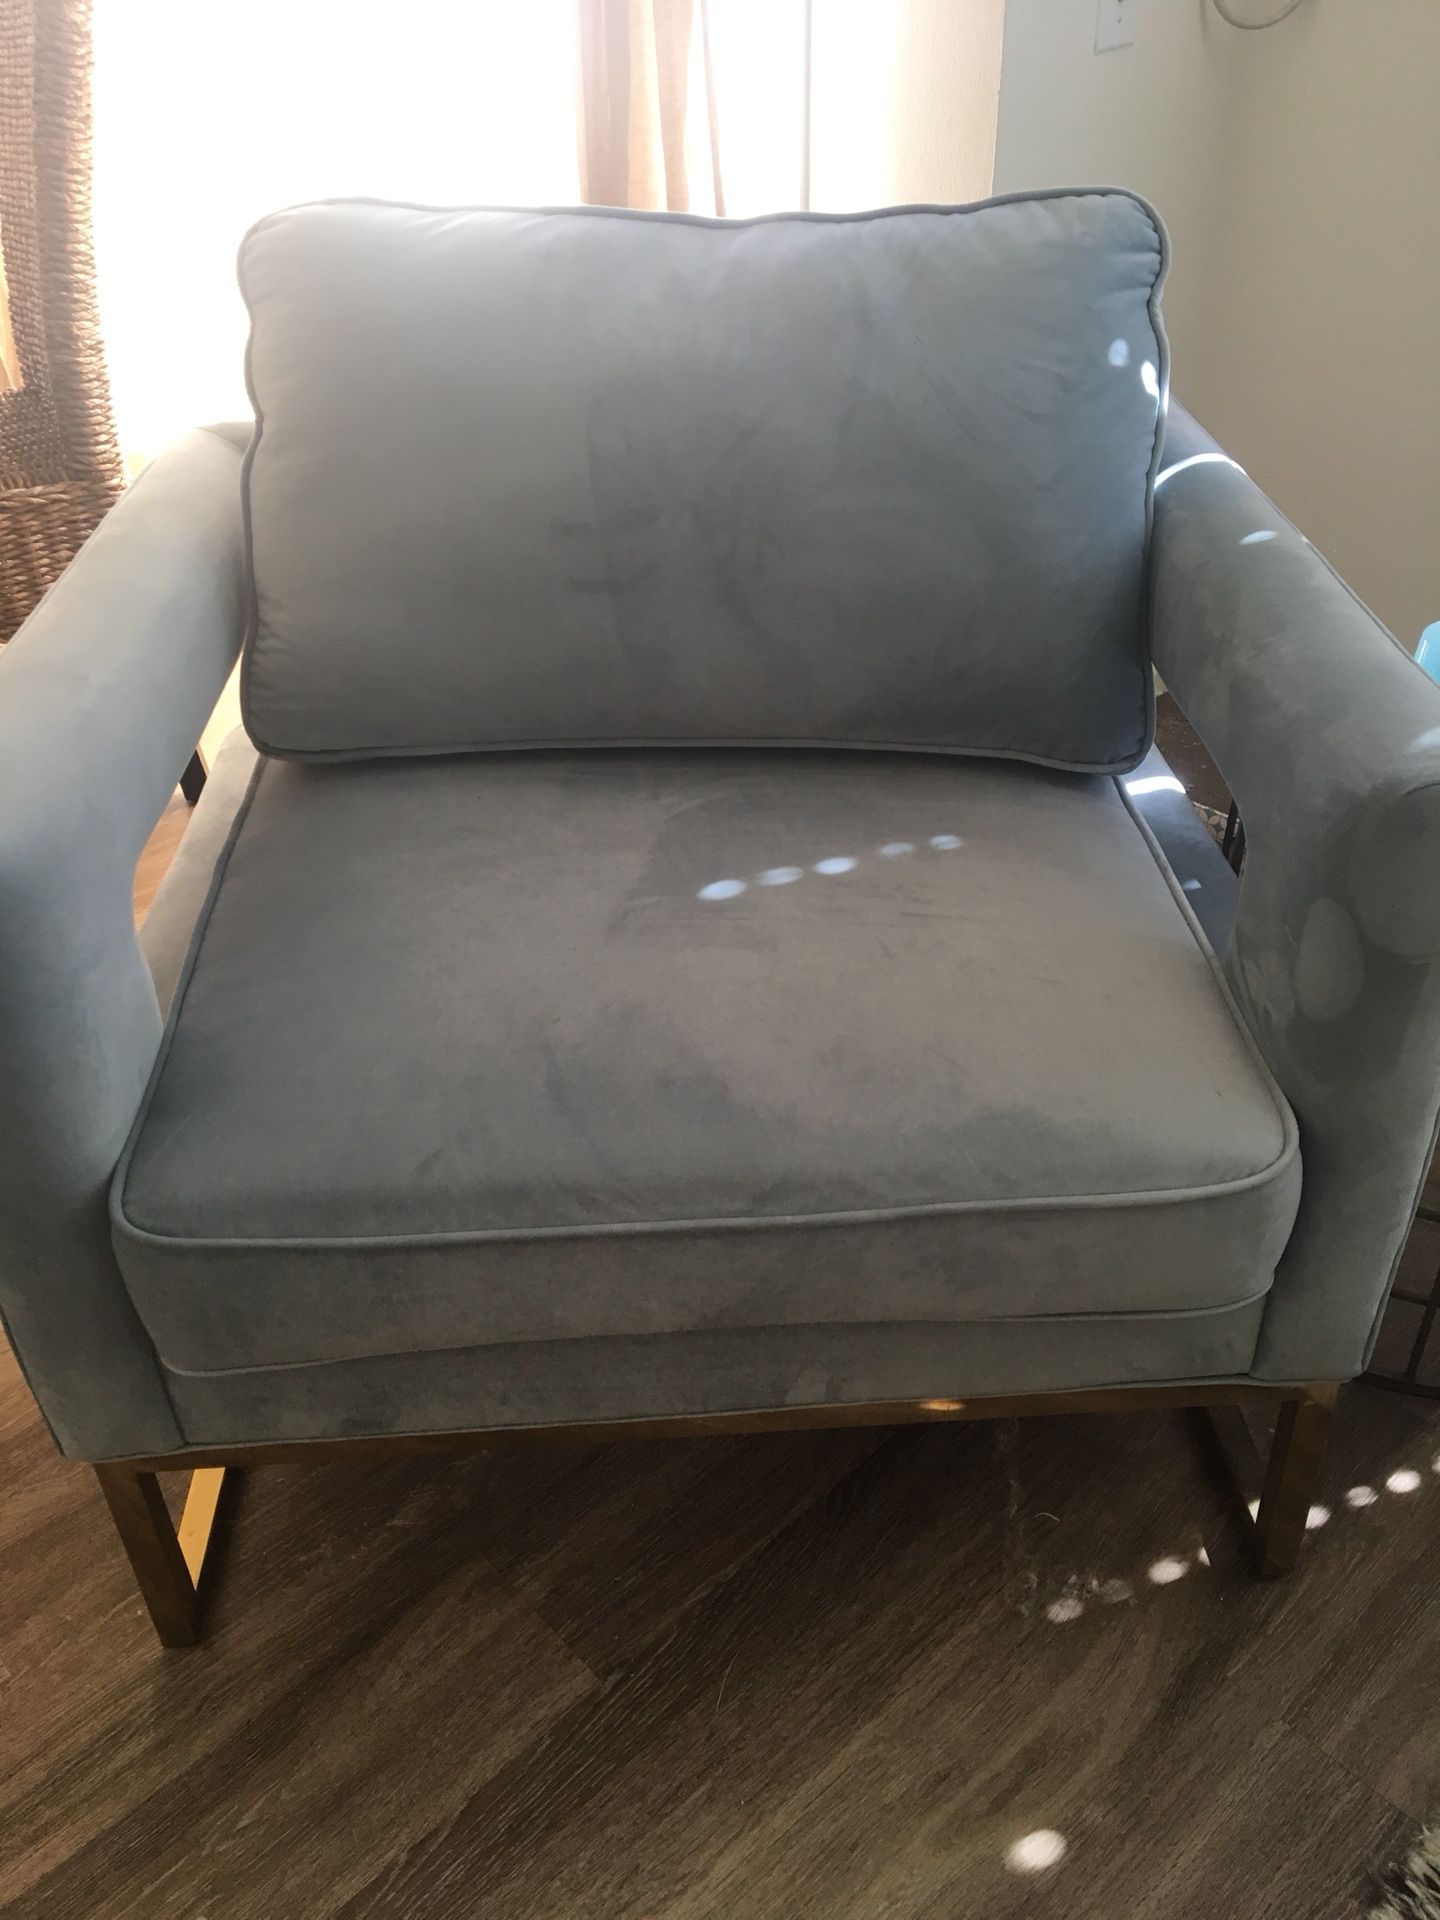 Blue velvet chair